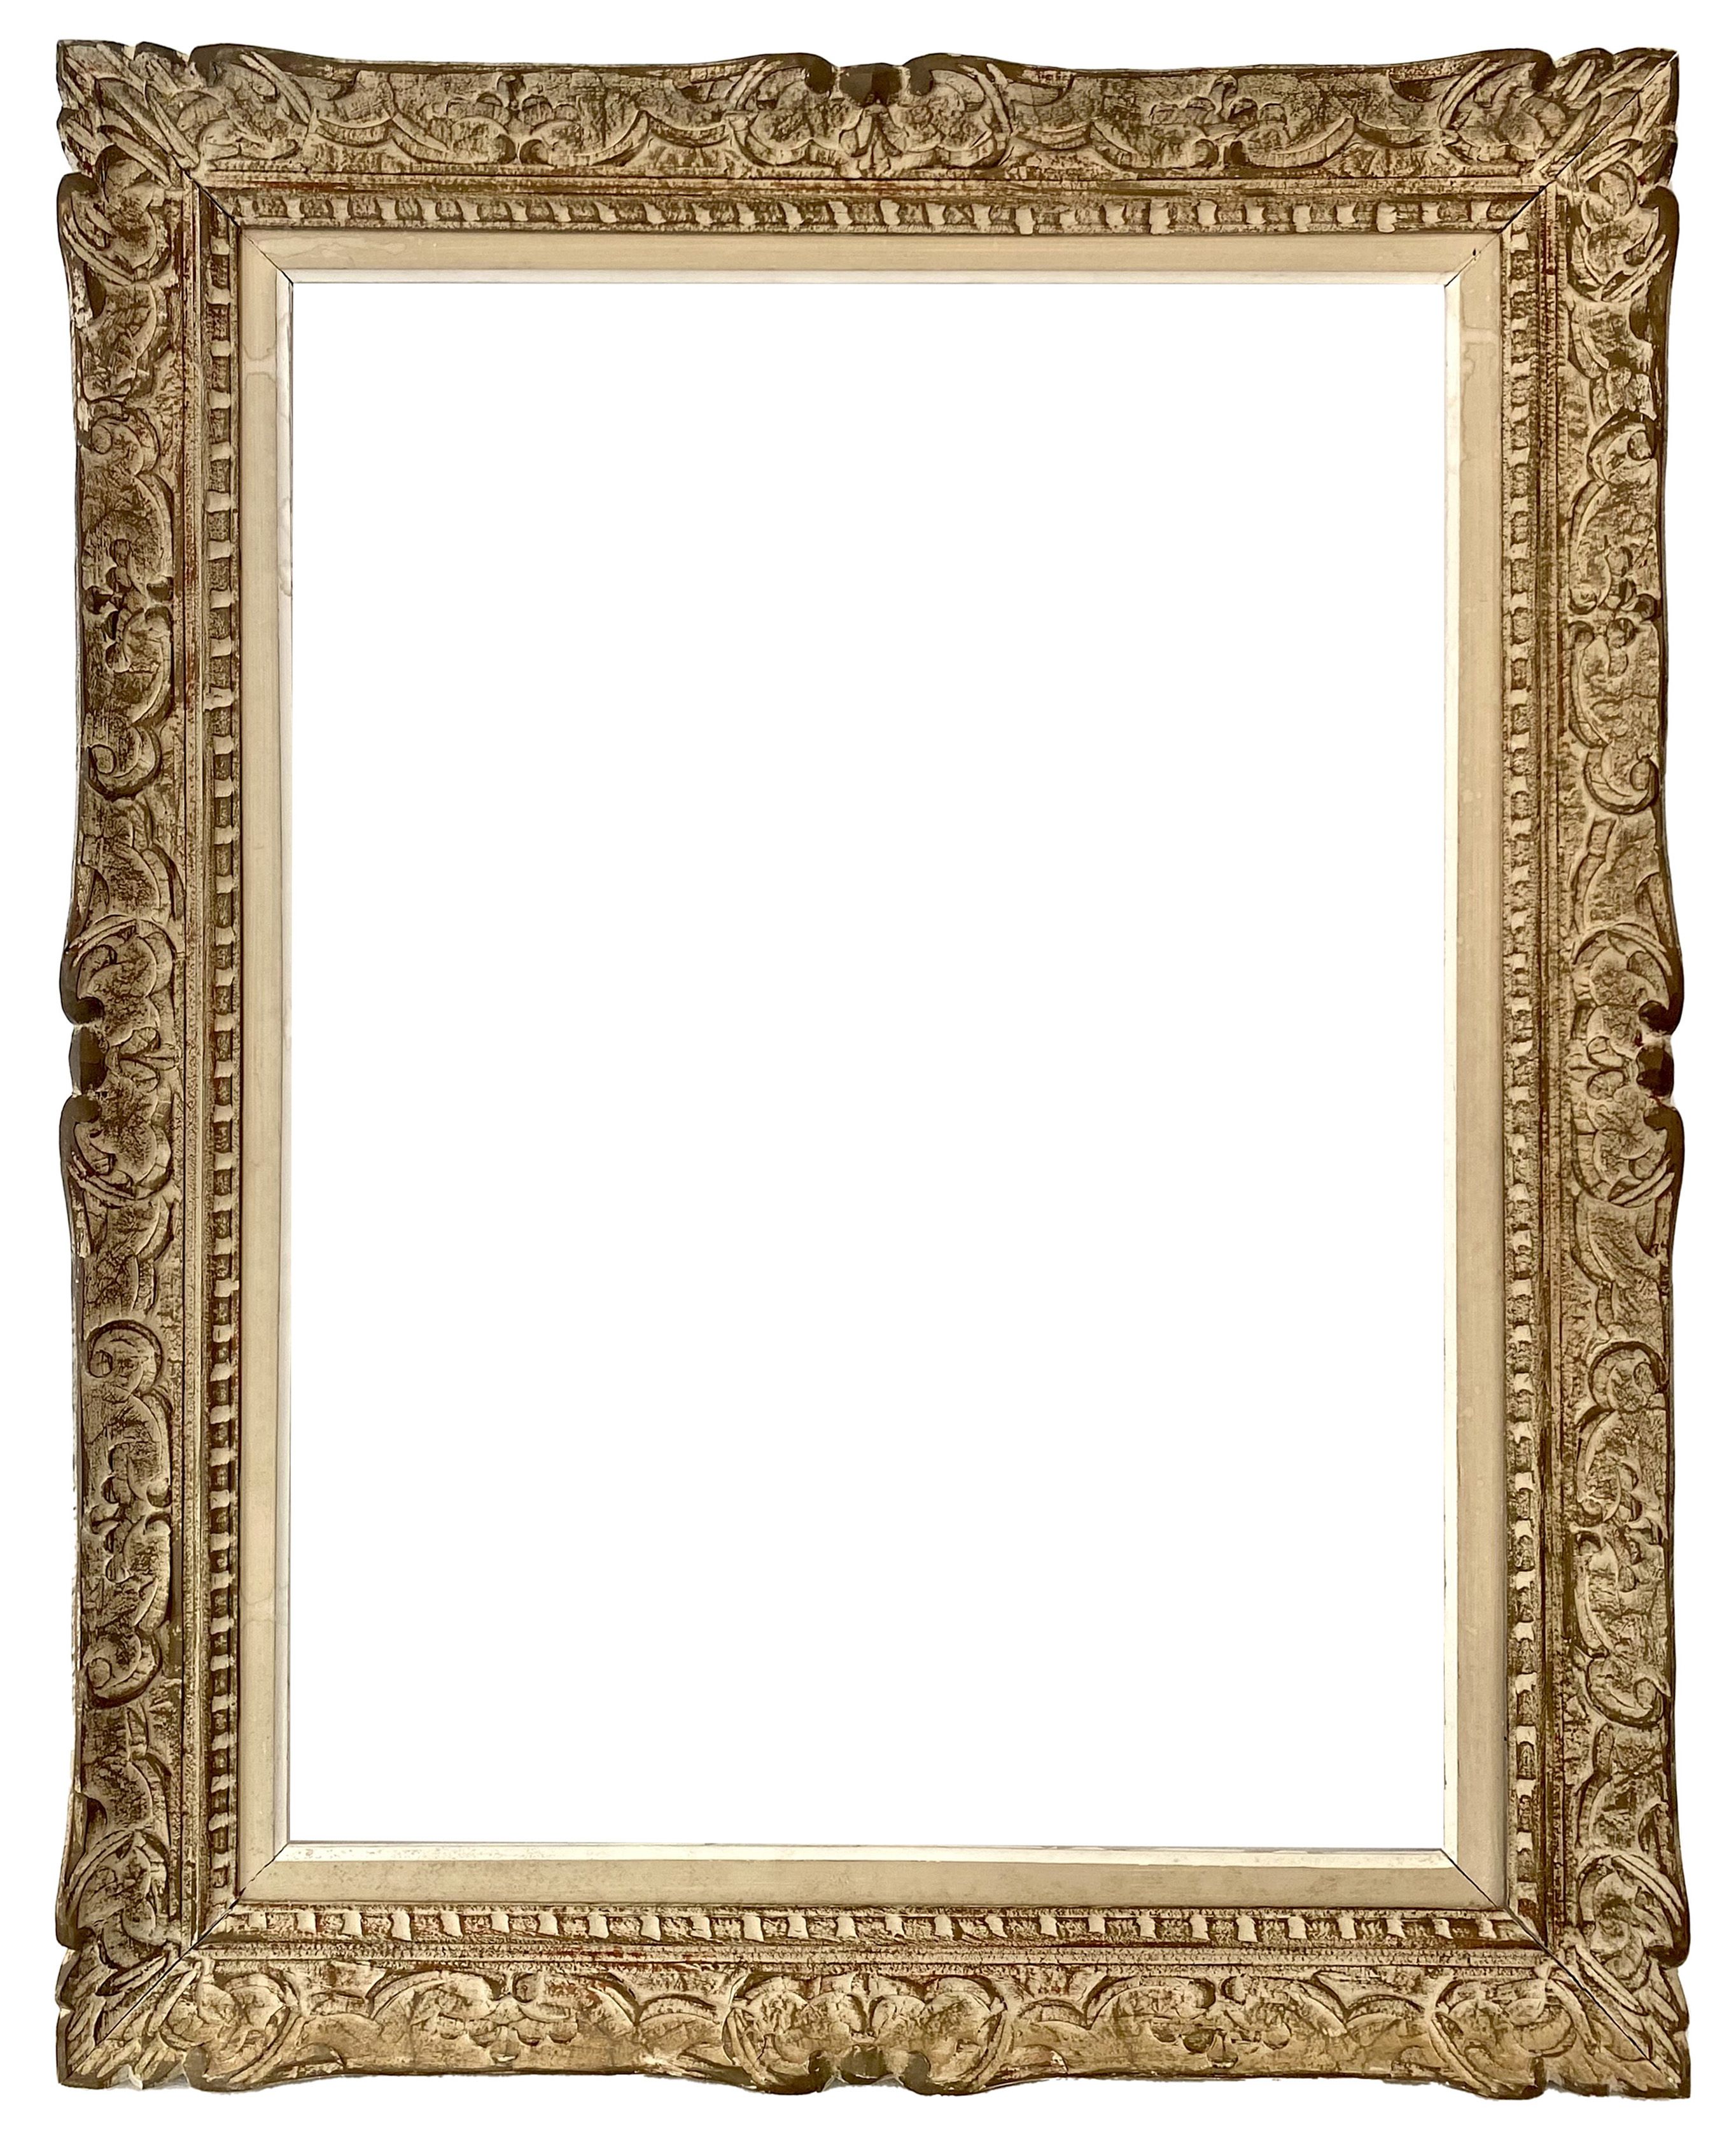 Montparnasse frame  - 82,10 x 60,90 - Ref -1442